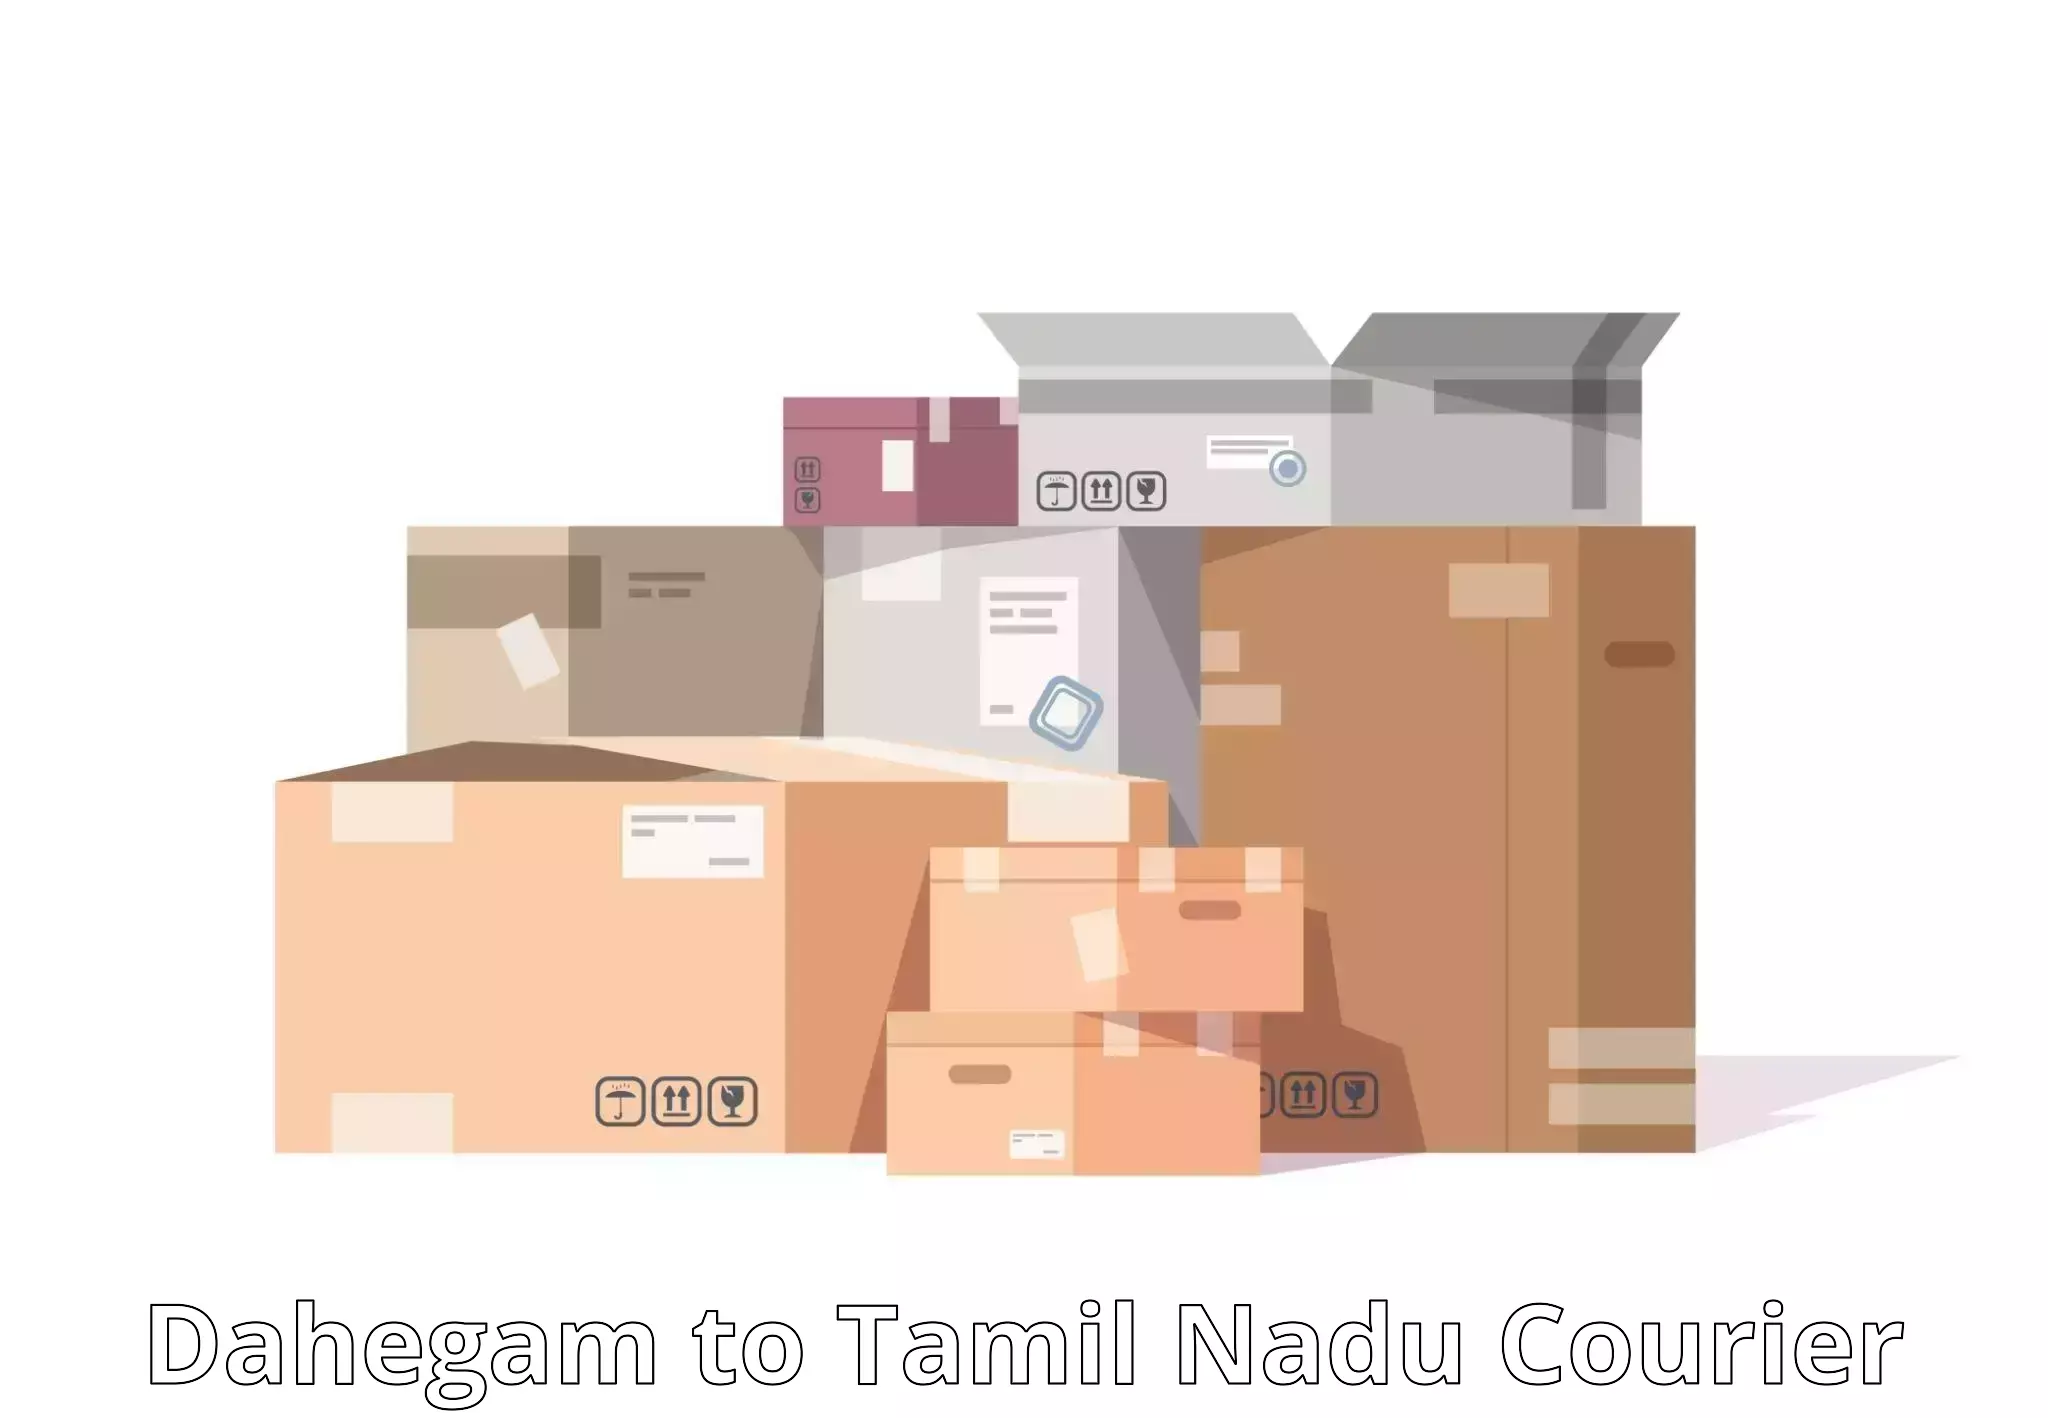 State-of-the-art courier technology Dahegam to Amrita Vishwa Vidyapeetham Coimbatore